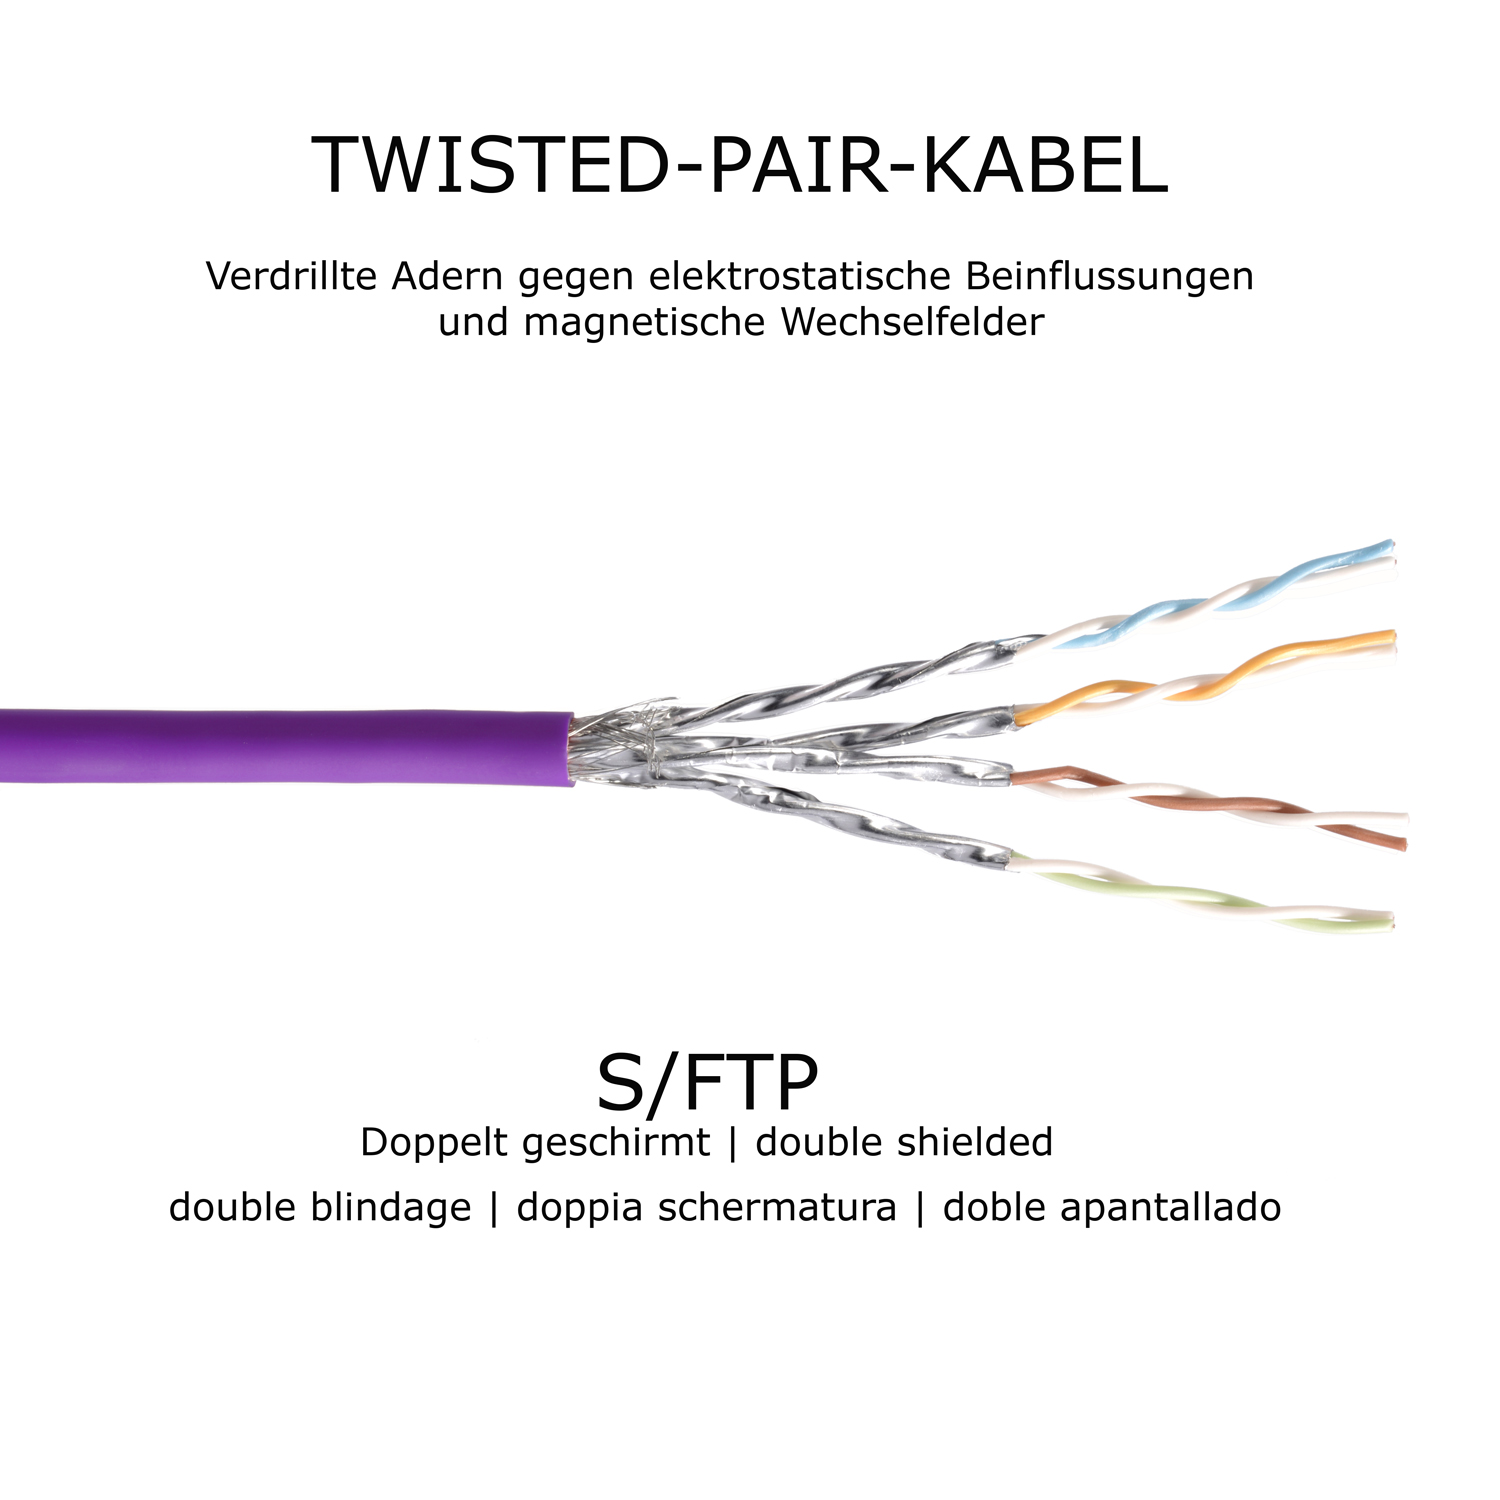 1m S/FTP 10GBit, 1 / Patchkabel violett, TPFNET Netzwerkkabel, Netzwerkkabel m